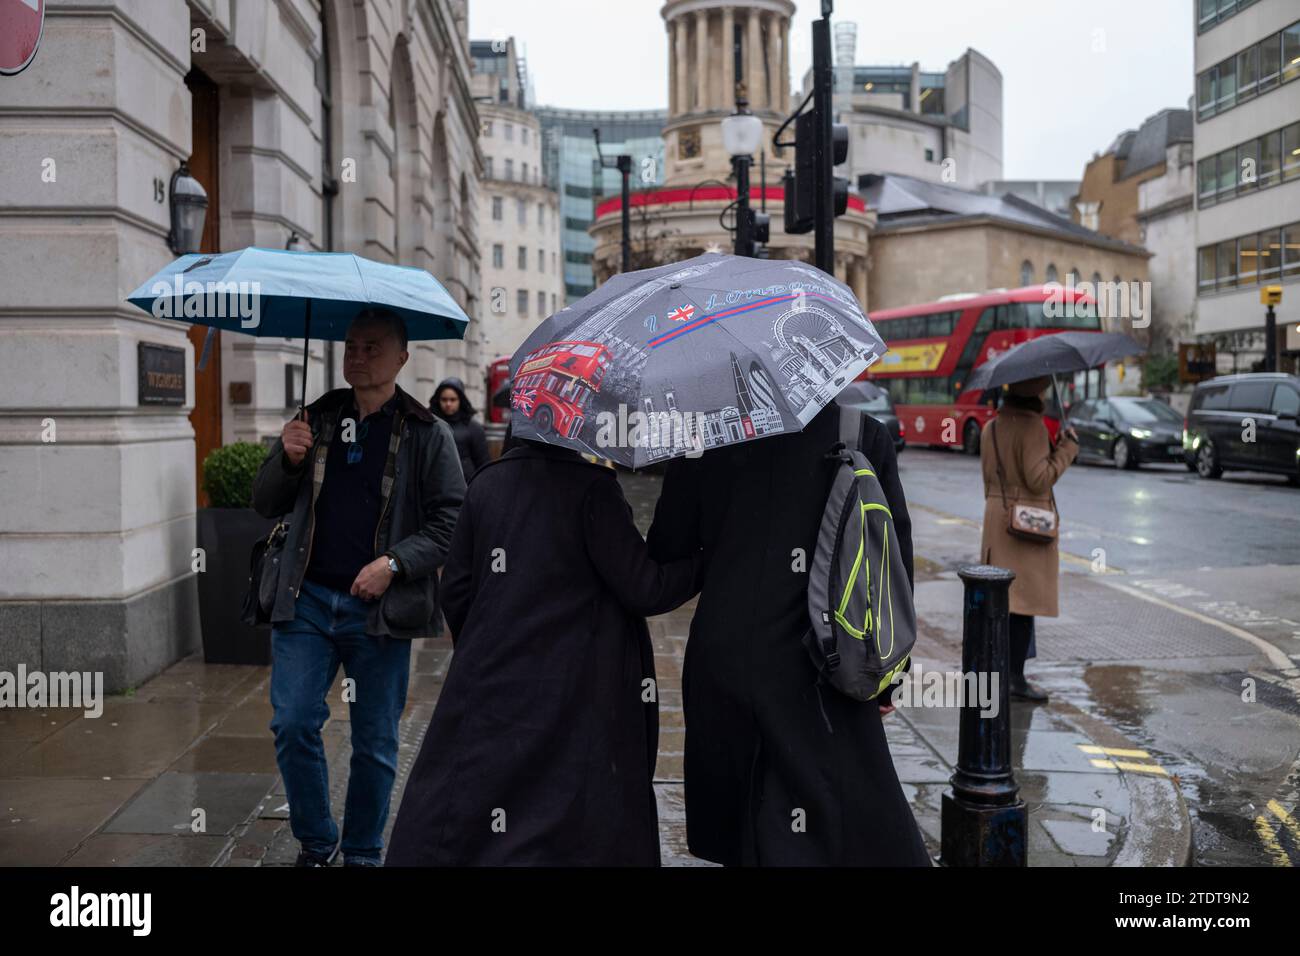 Acheteurs de Noël à Oxford Circus sur une journée d'hiver humide, Londres, Angleterre, Royaume-Uni Banque D'Images